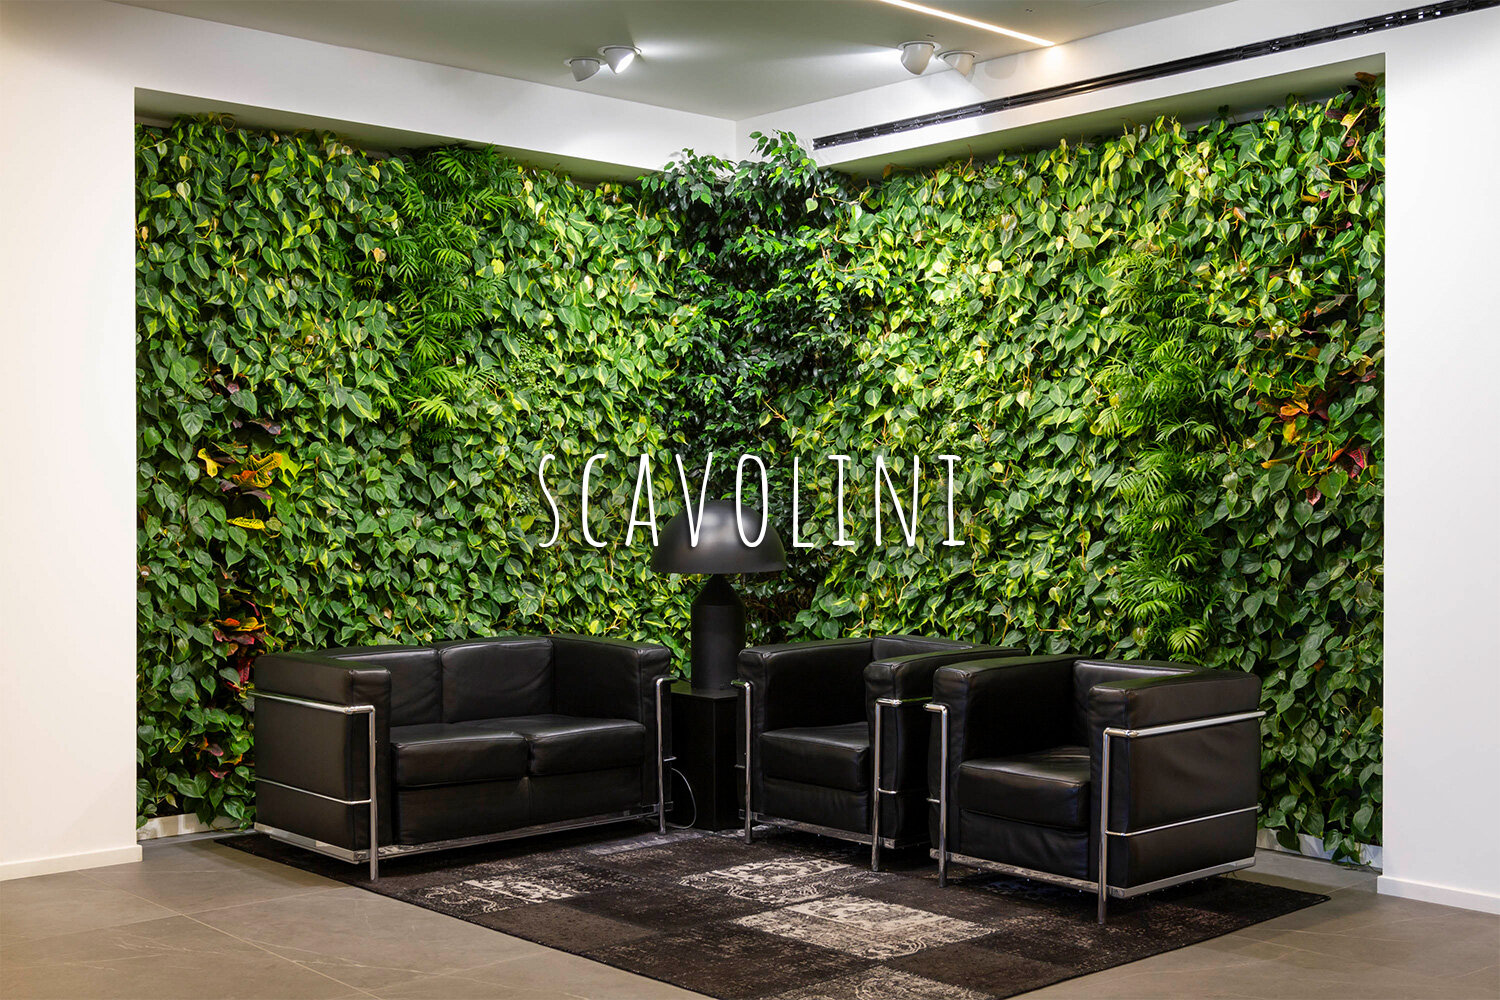 Living Wall, Vertical Garden, Green Wall, Interior, Non-residential, Scavolini, Pesaro